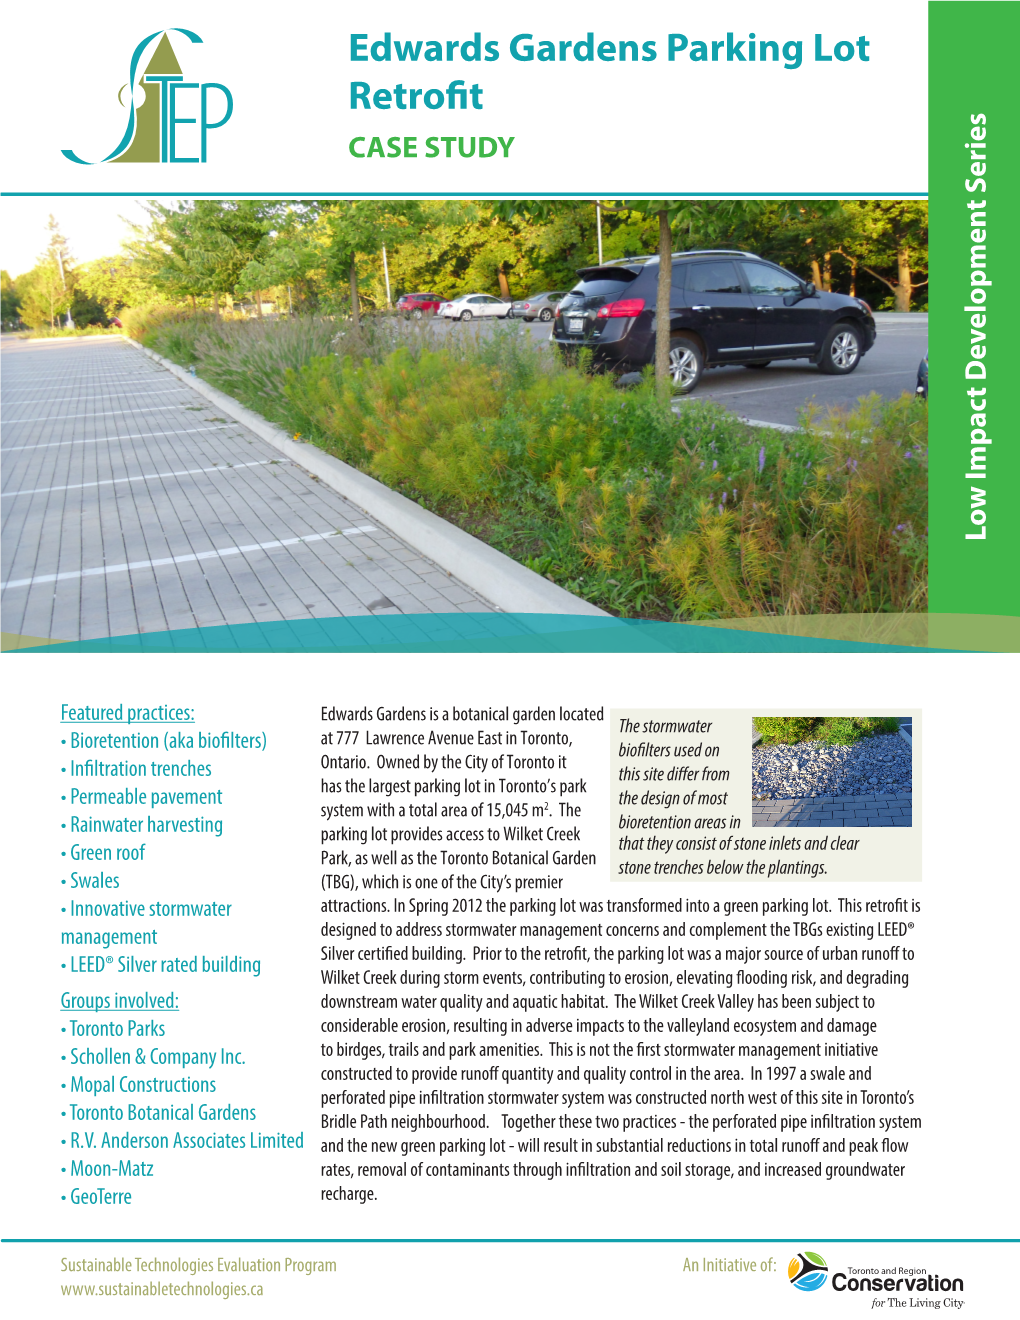 Edwards Gardens Parking Lot Retrofit CASE STUDY Low Impact Development Series Impactlow Development